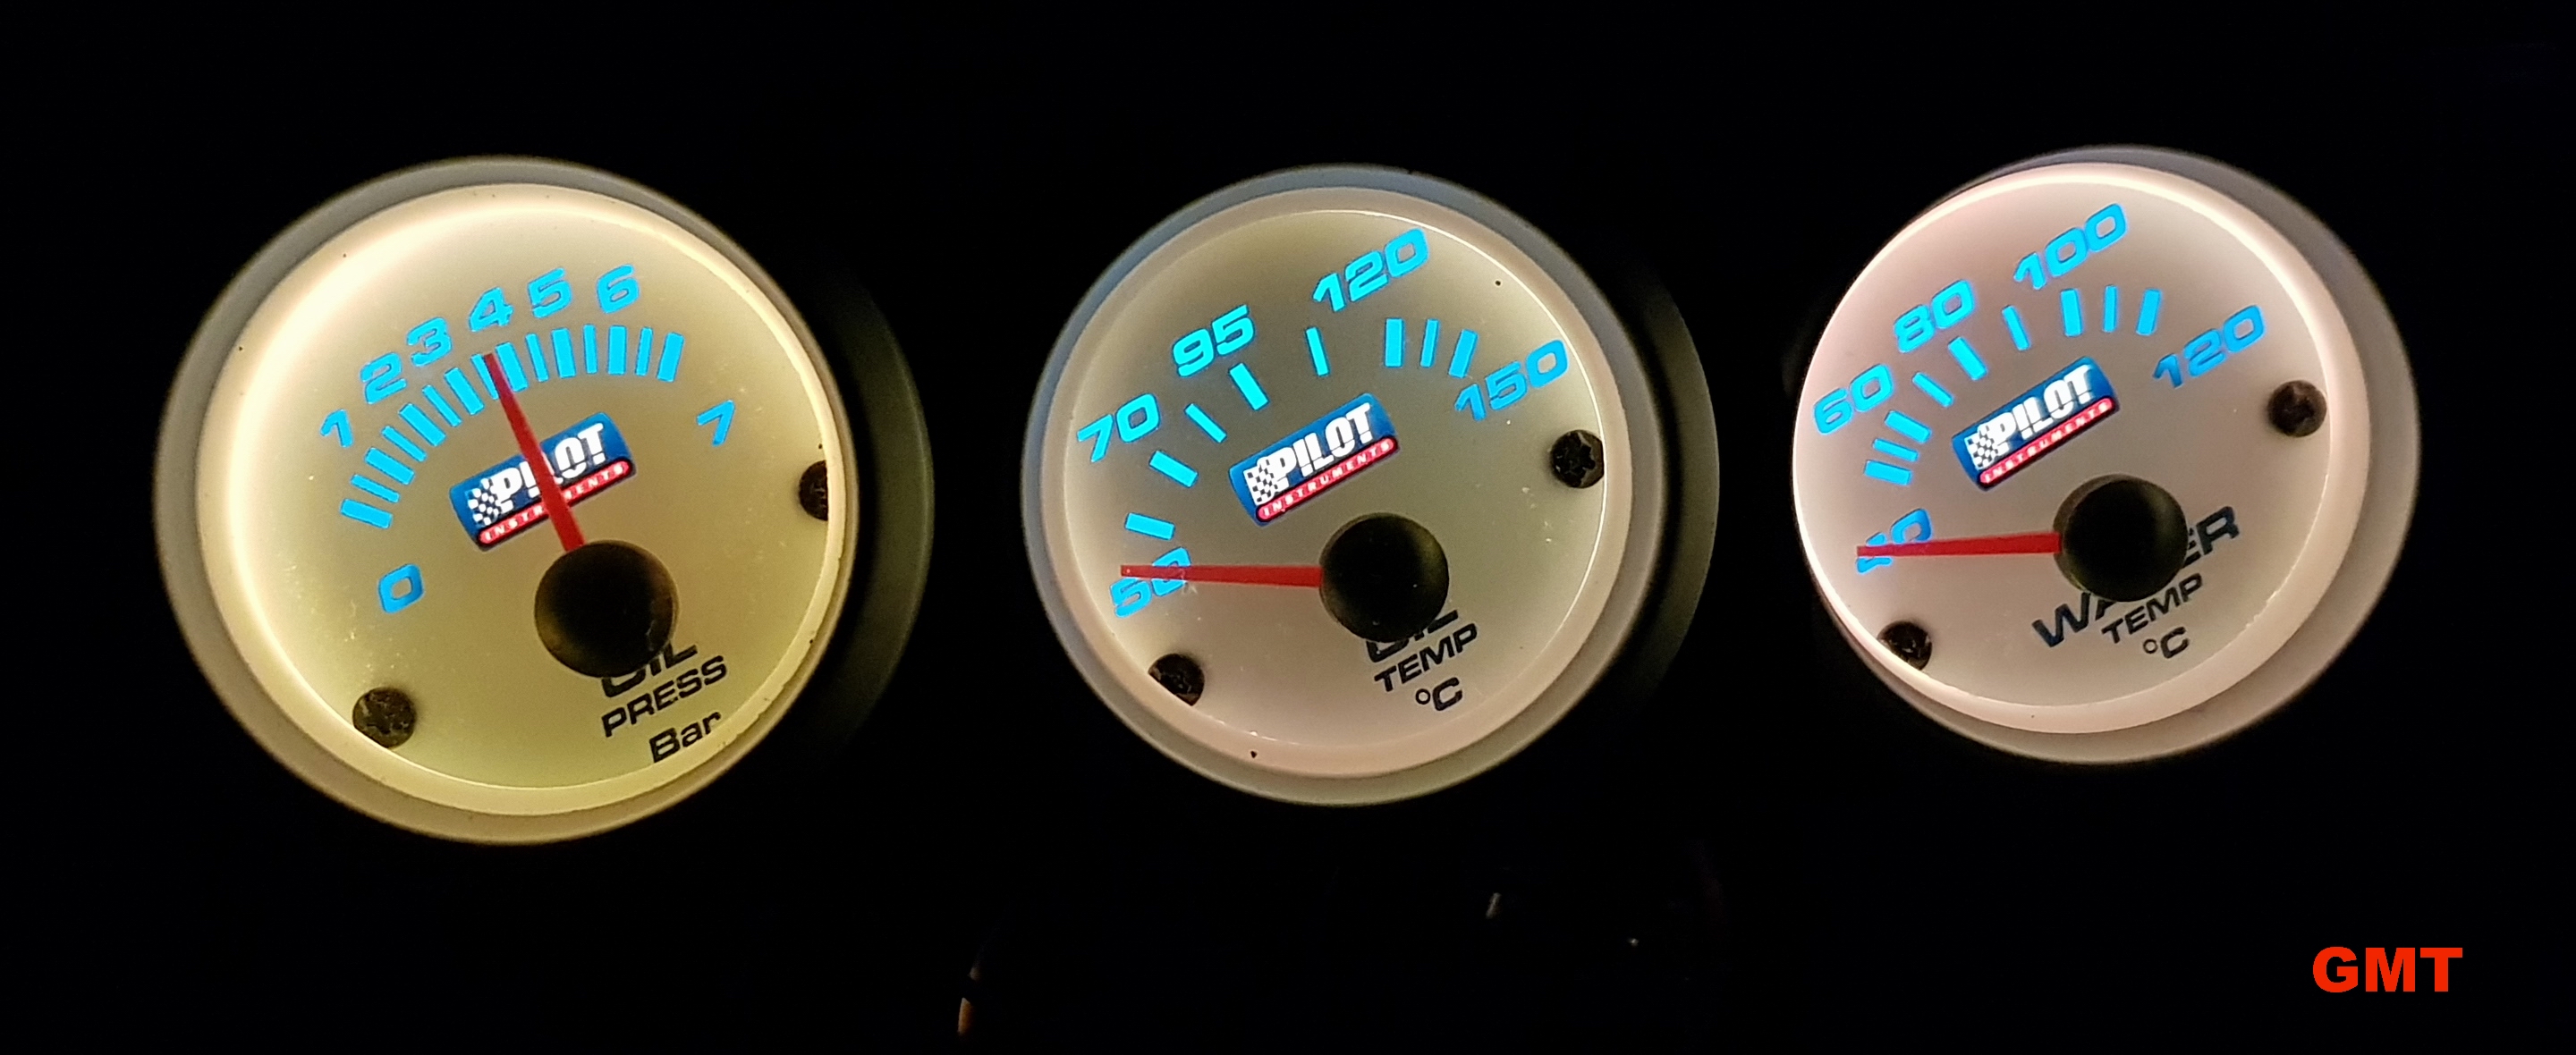 Suzuki vitara guida installazione manometri
da destra: Pressione Olio - Temperatura Olio - Temperatura Acqua
Accessori Pilot by Lampa